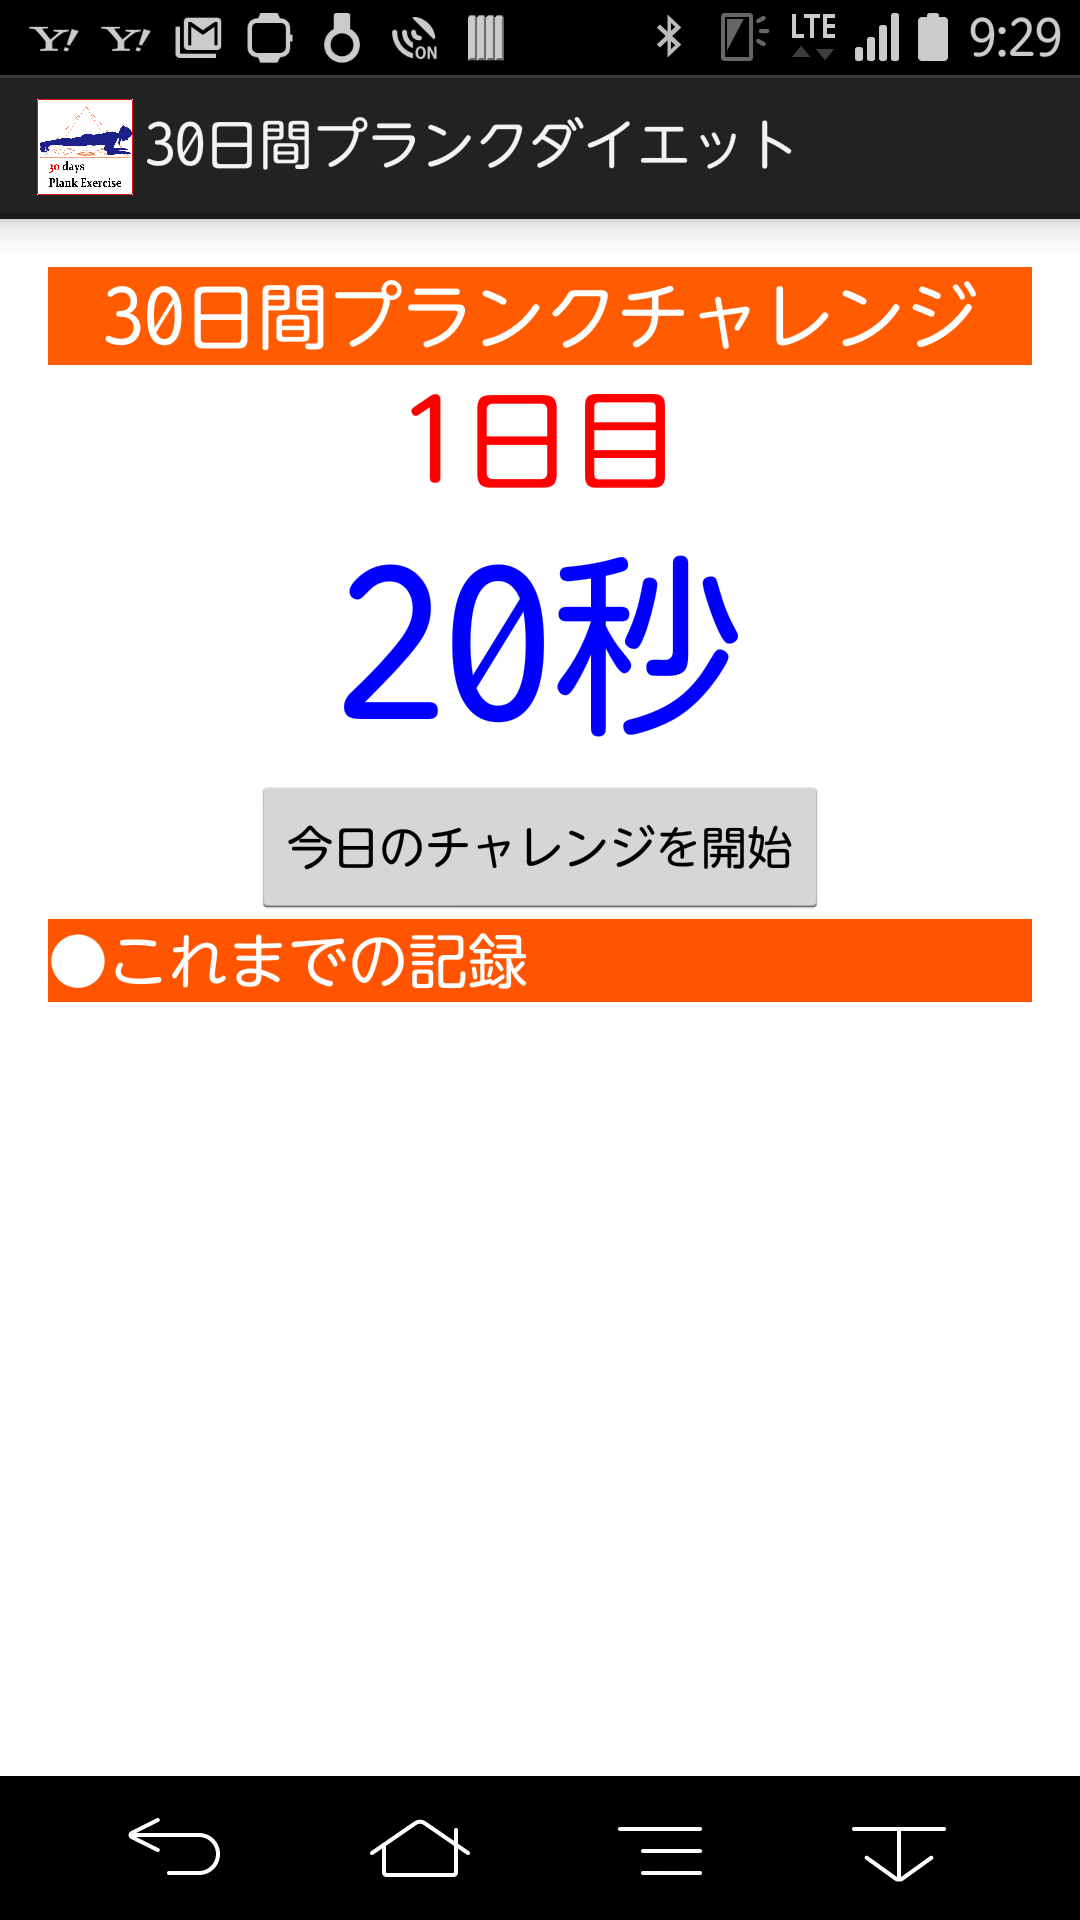 Android application 30日間プランクダイエット screenshort